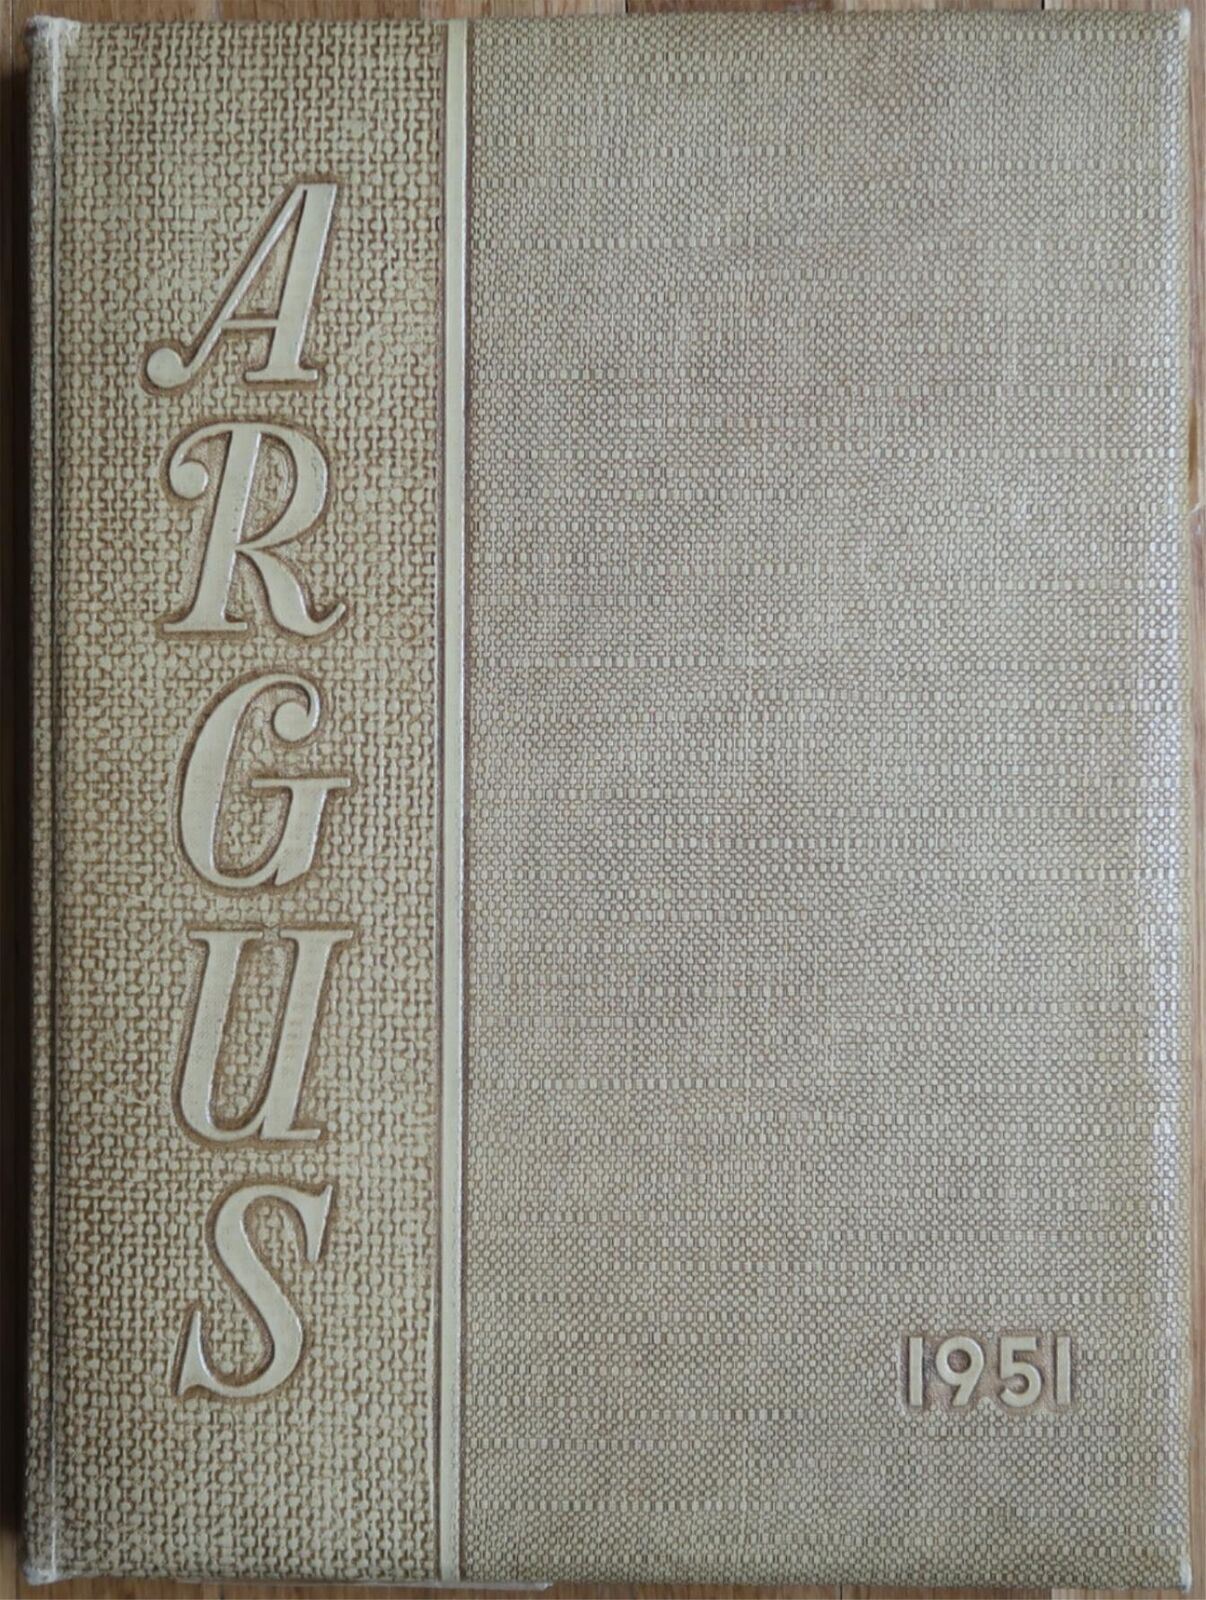 1951 OTTUMWA IOWA THE ARGUS HIGH SCHOOL YEARBOOK V2